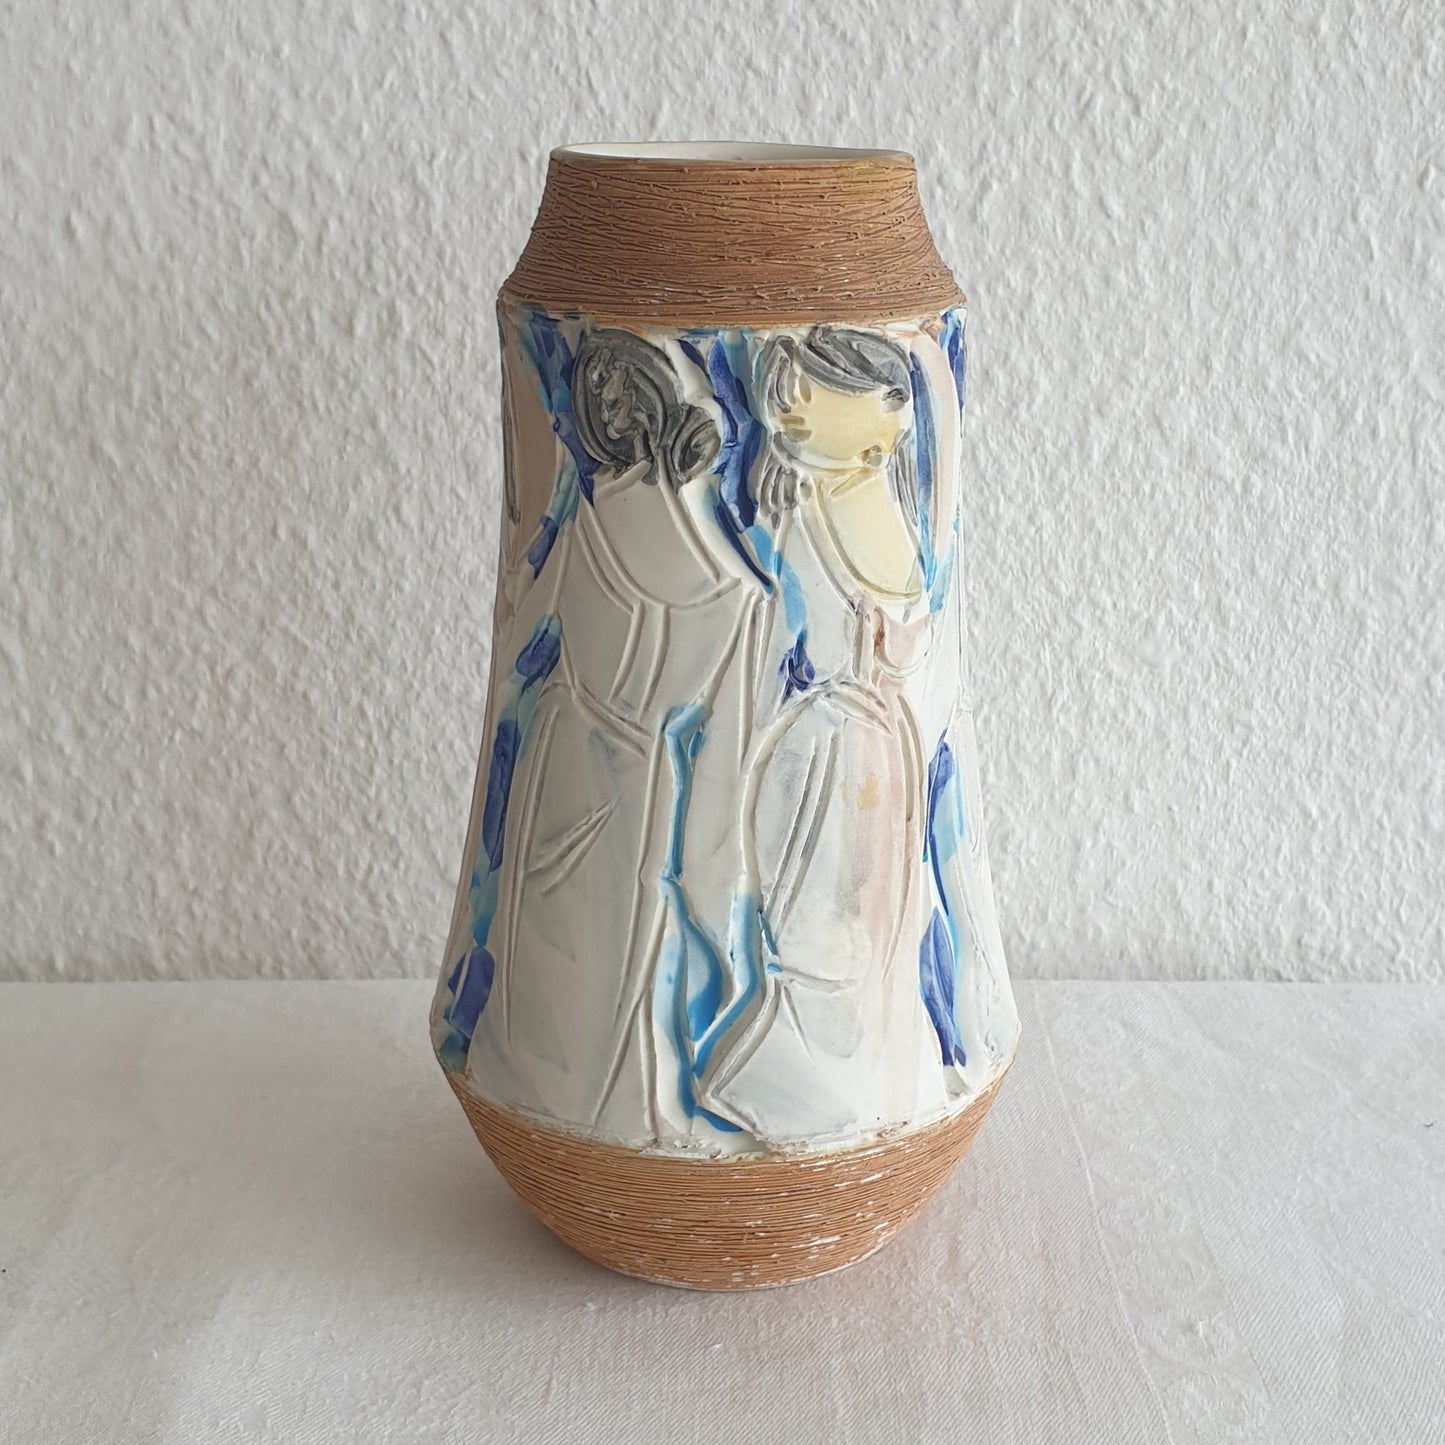 FRATELLI FANCIULLACCI White Blue Yellow Sgrafitto Decorated Ceramic Vase Mollaris.com 